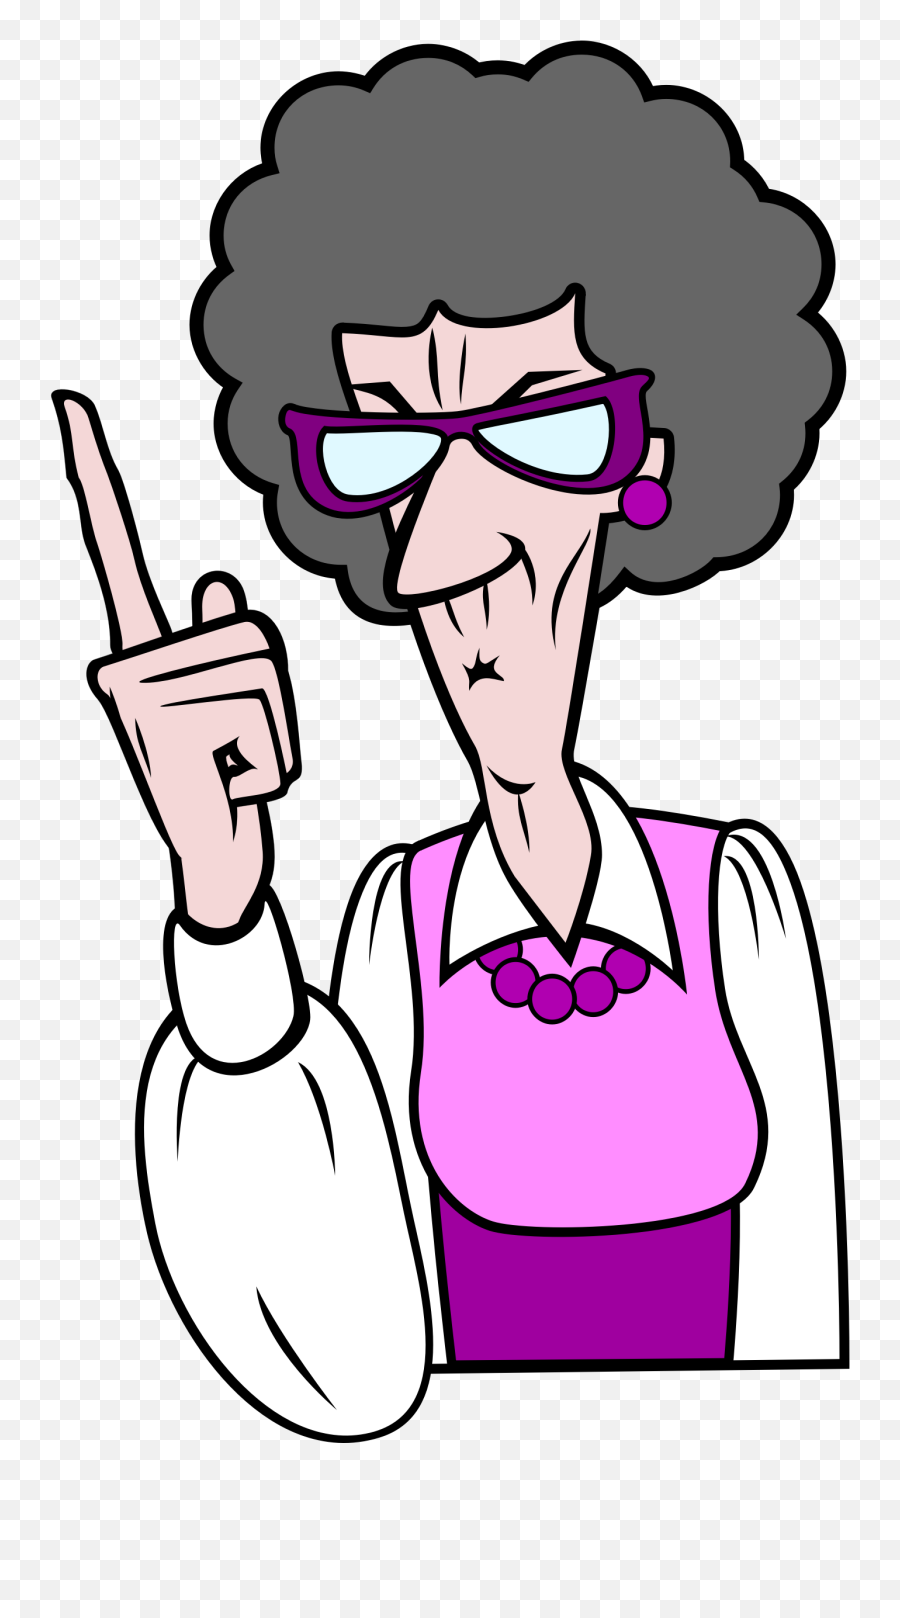 Old Clipart Old Woman Old Old Woman - Old Woman Clip Art Emoji,Old Man Old Woman Emoji